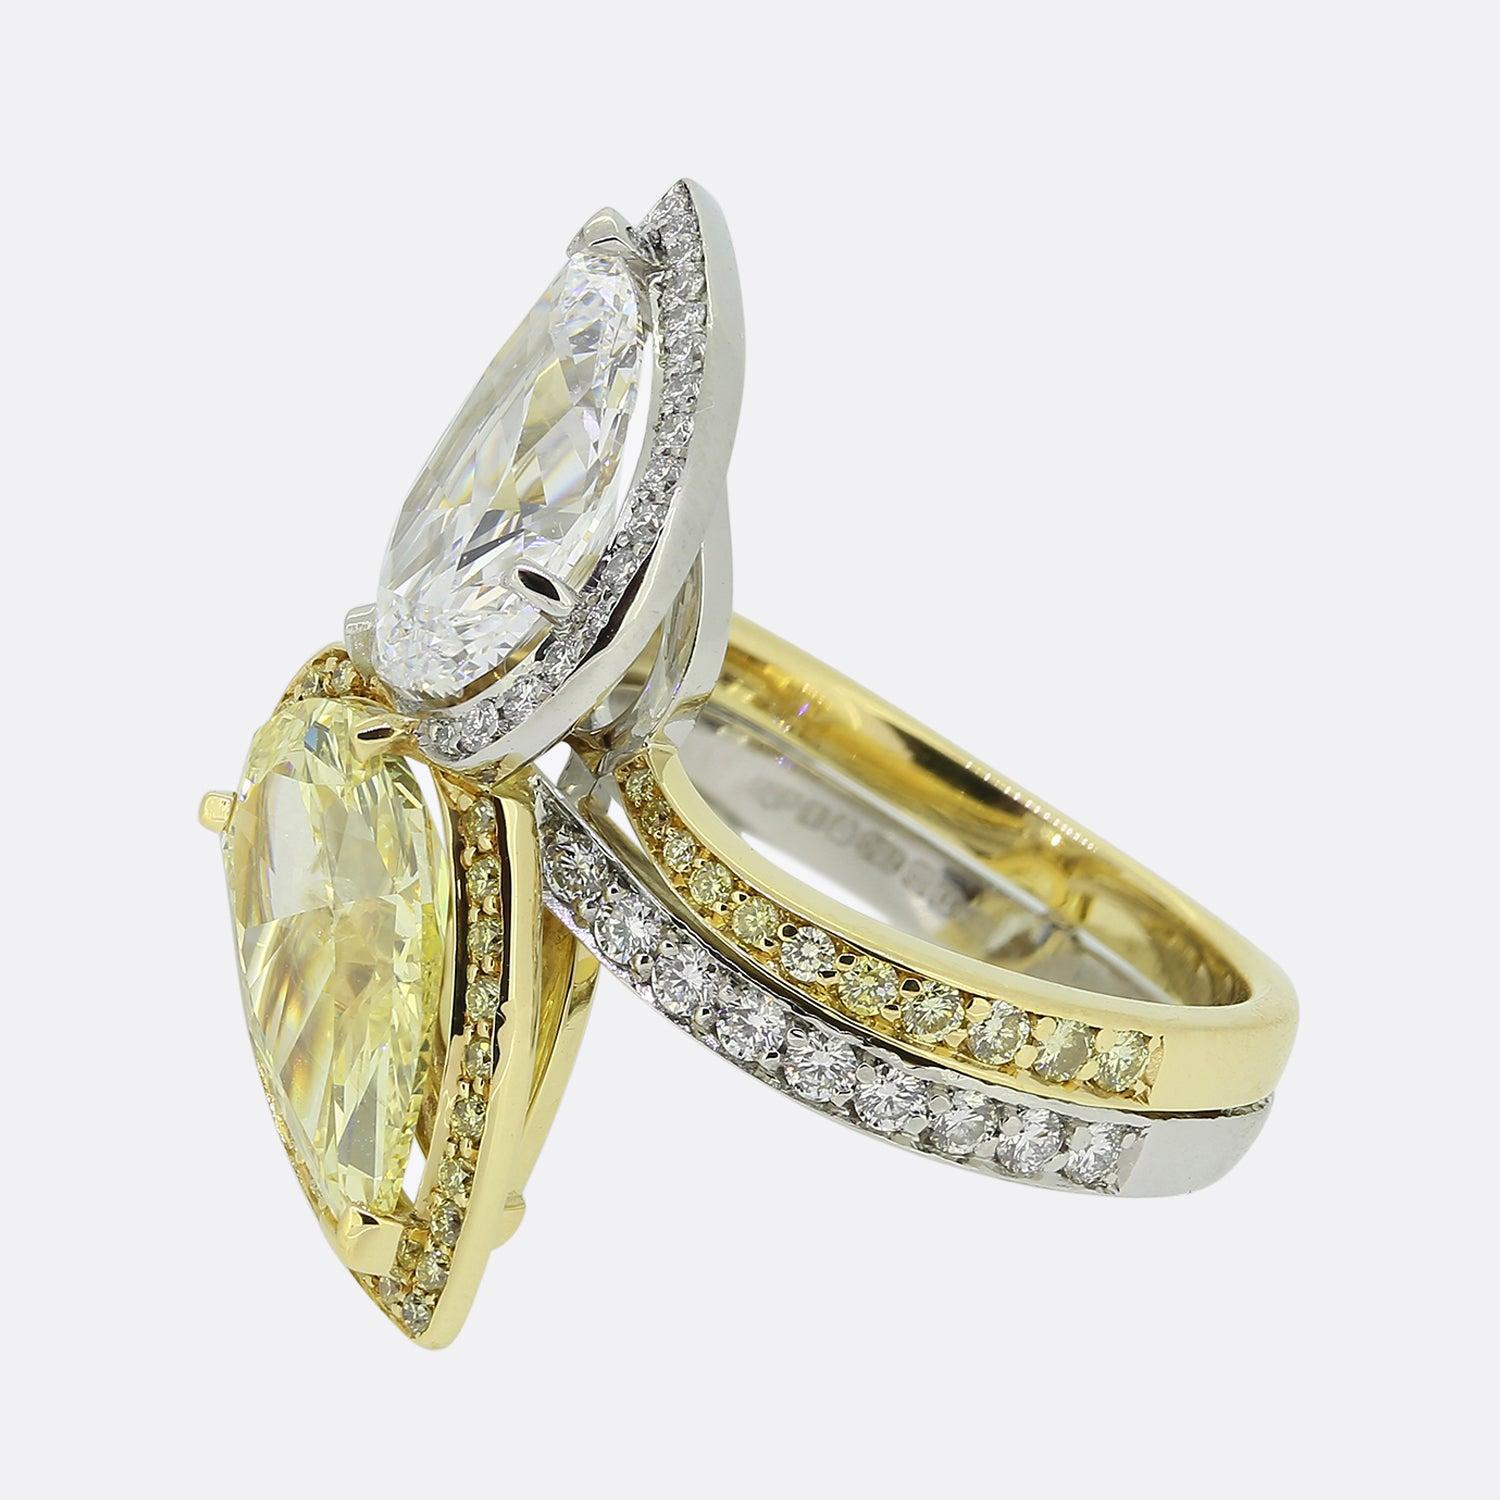 Il s'agit d'une magnifique bague du créateur de bijoux de luxe Boodles. La bague est fabriquée en or blanc et jaune 18 carats et comporte un diamant jaune intense de 2,43 carats et un superbe diamant de couleur D de 2,34 carats. La bague fait partie